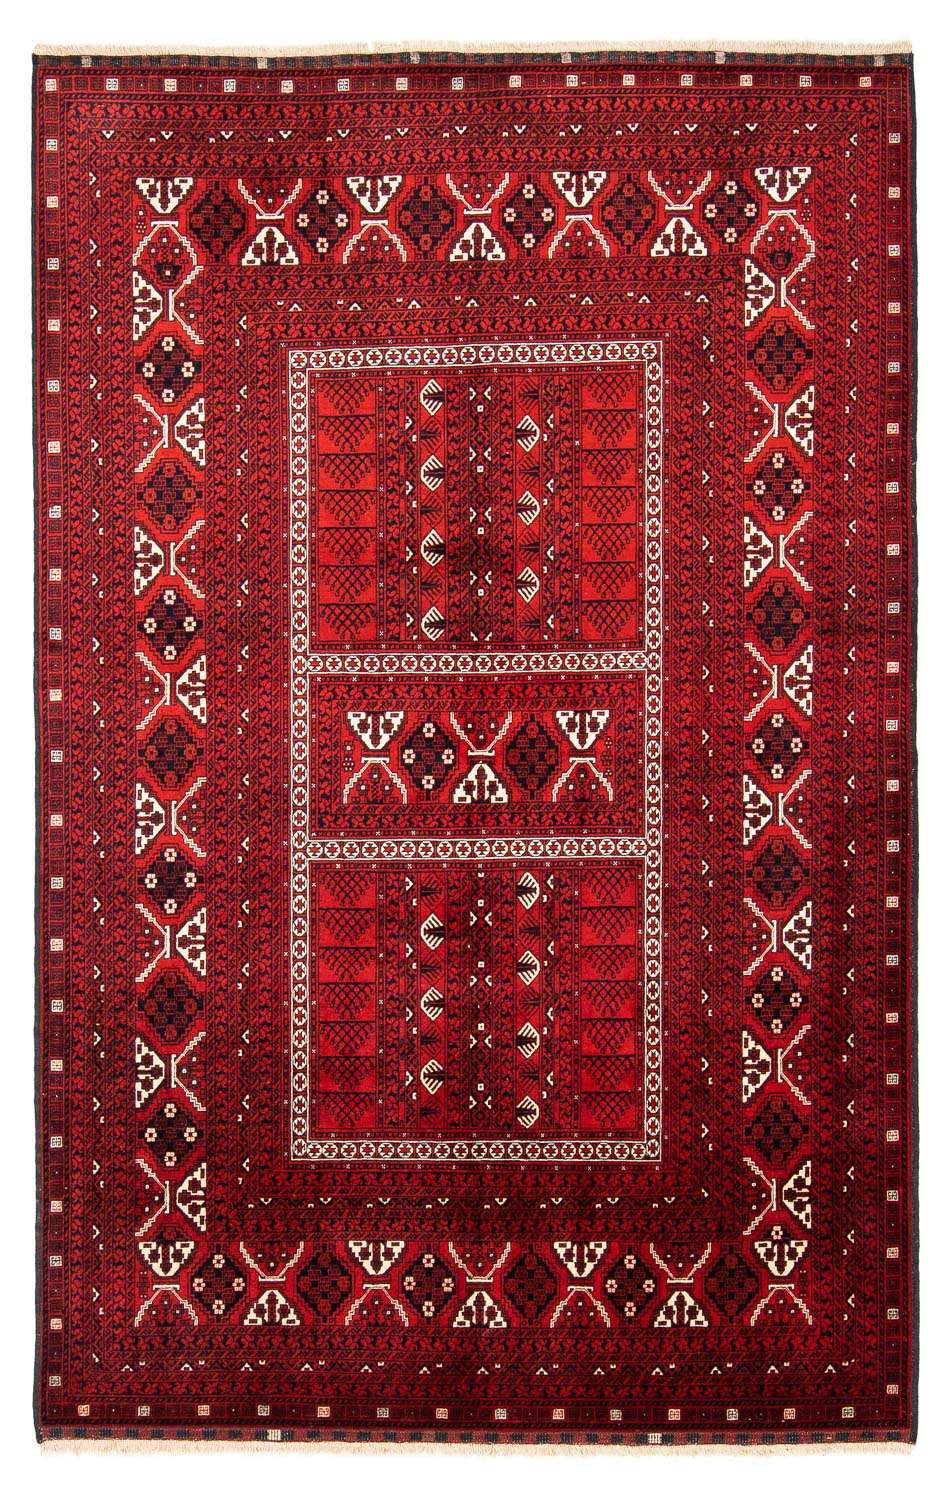 Tapis Turkaman - 243 x 160 cm - rouge foncé